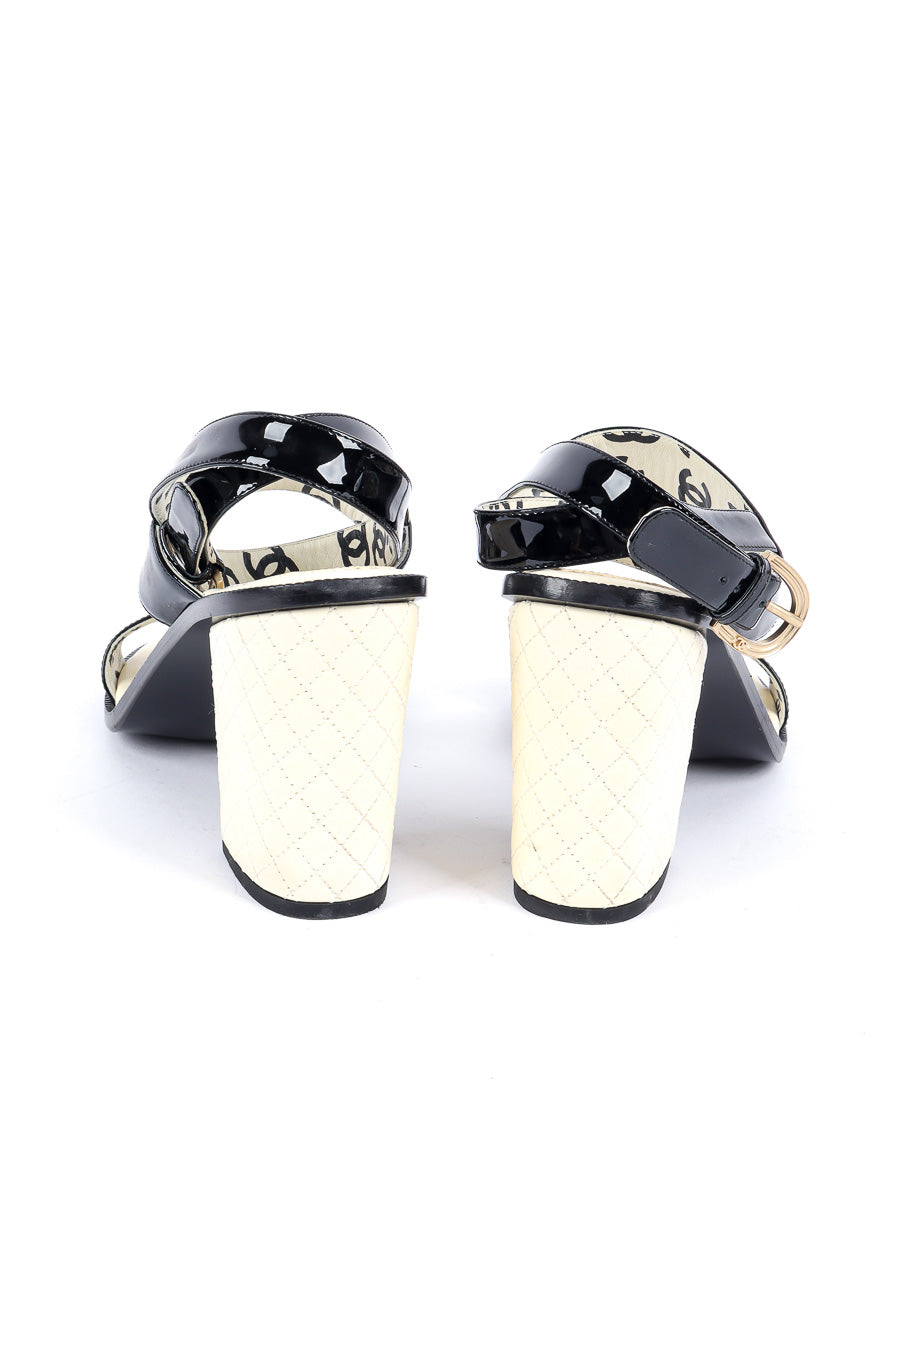 Chanel patent leather wrap sandal product shot @recessla